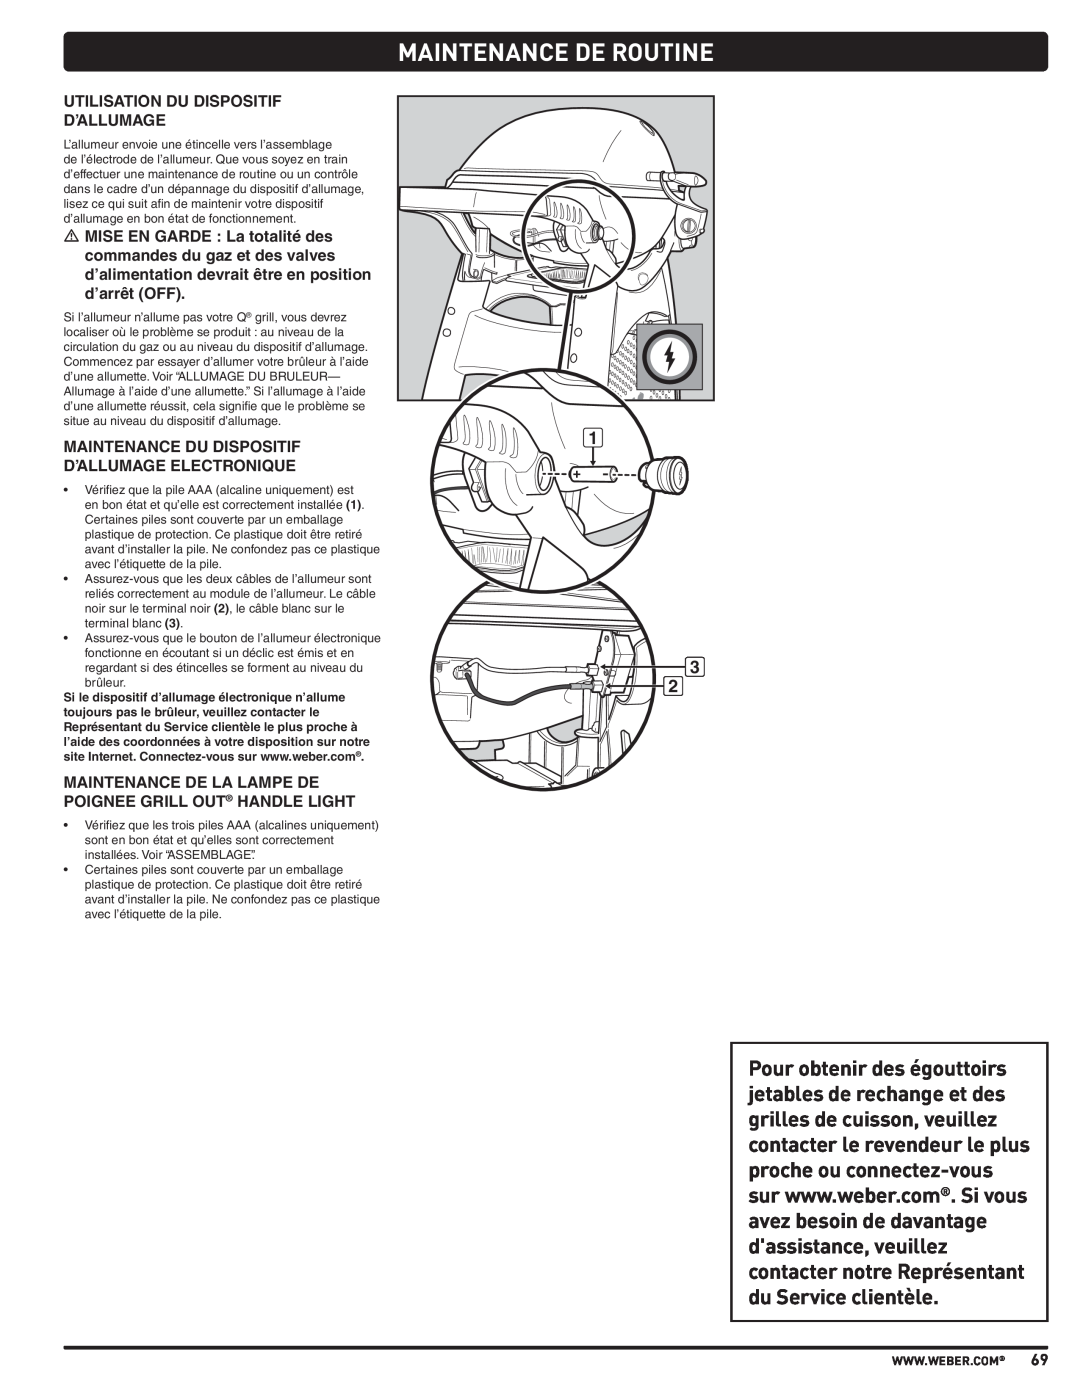 Weber 57515 manual Maintenance De Routine, Utilisation Du Dispositif D’Allumage 